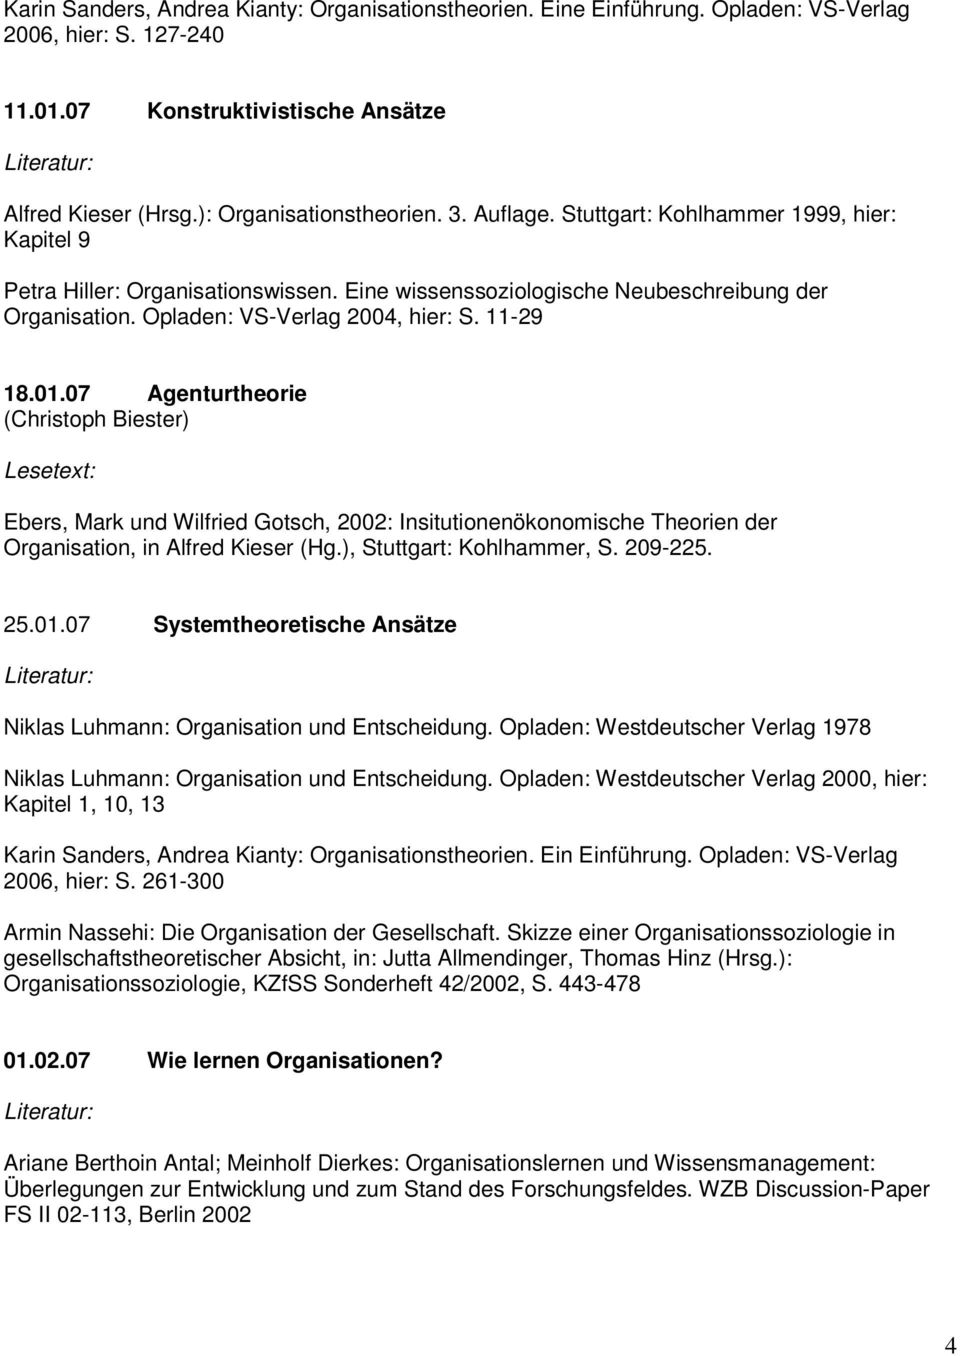 07 Agenturtheorie Lesetext: Ebers, Mark und Wilfried Gotsch, 2002: Insitutionenökonomische Theorien der Organisation, in Alfred Kieser (Hg.), Stuttgart: Kohlhammer, S. 209-225. 25.01.